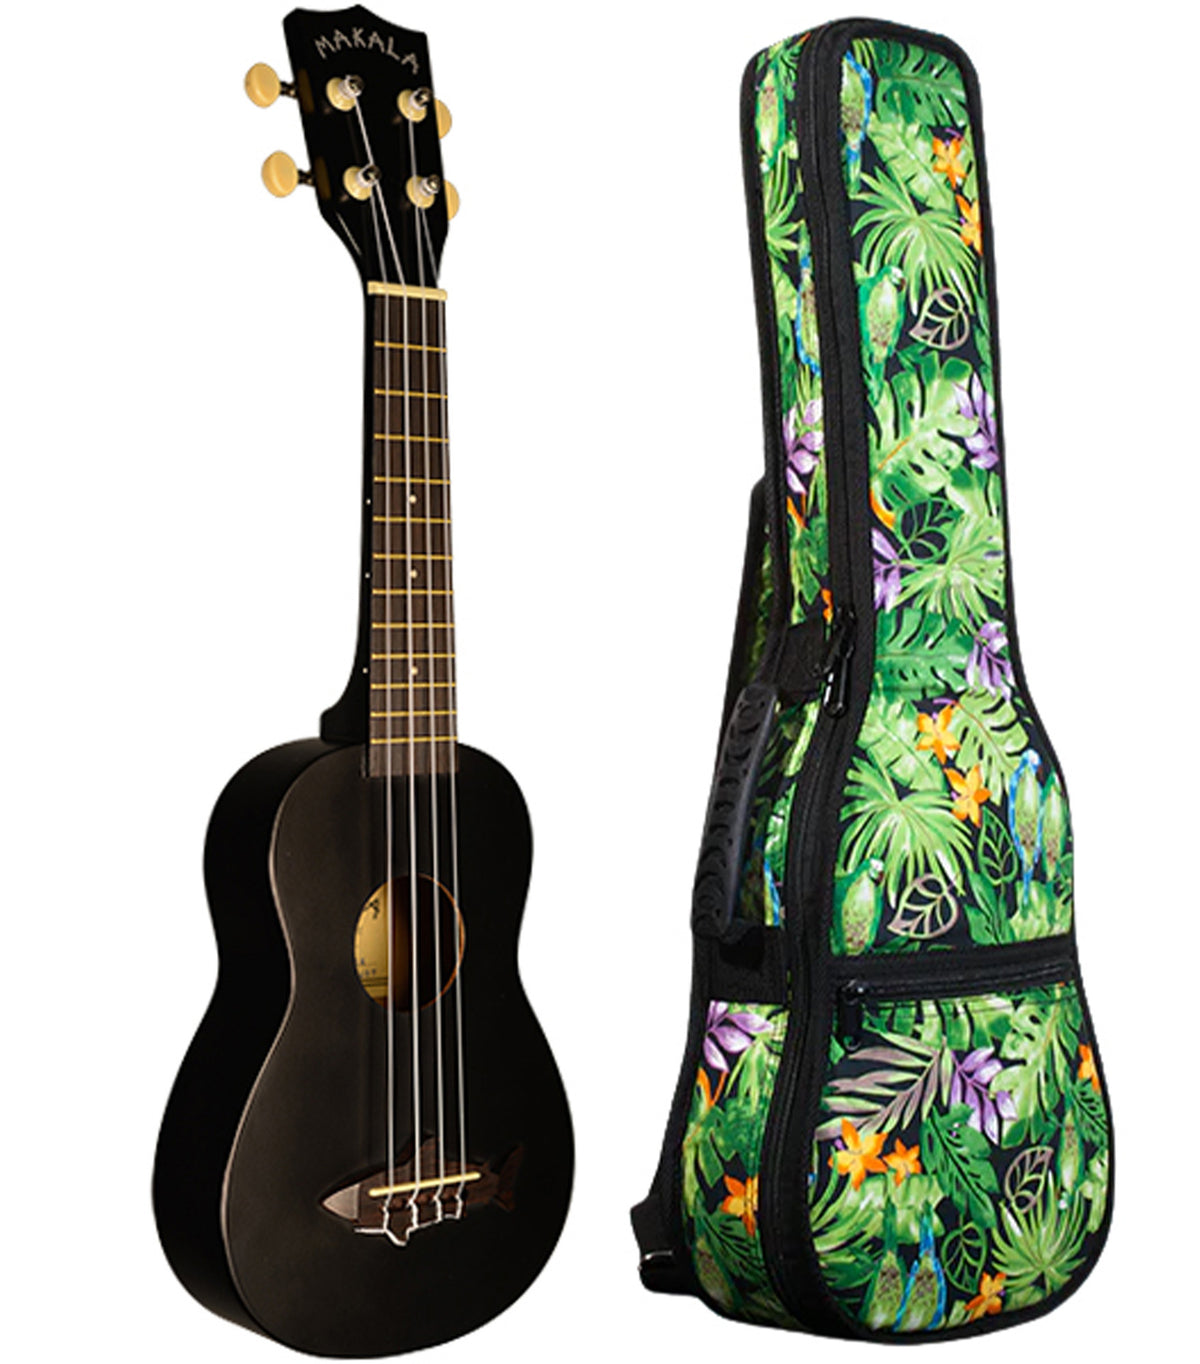 MK-SS/BLK Blacktip Soprano Shark Ukulele Includes Gigbag Floral Print, Padded with Backpack Straps